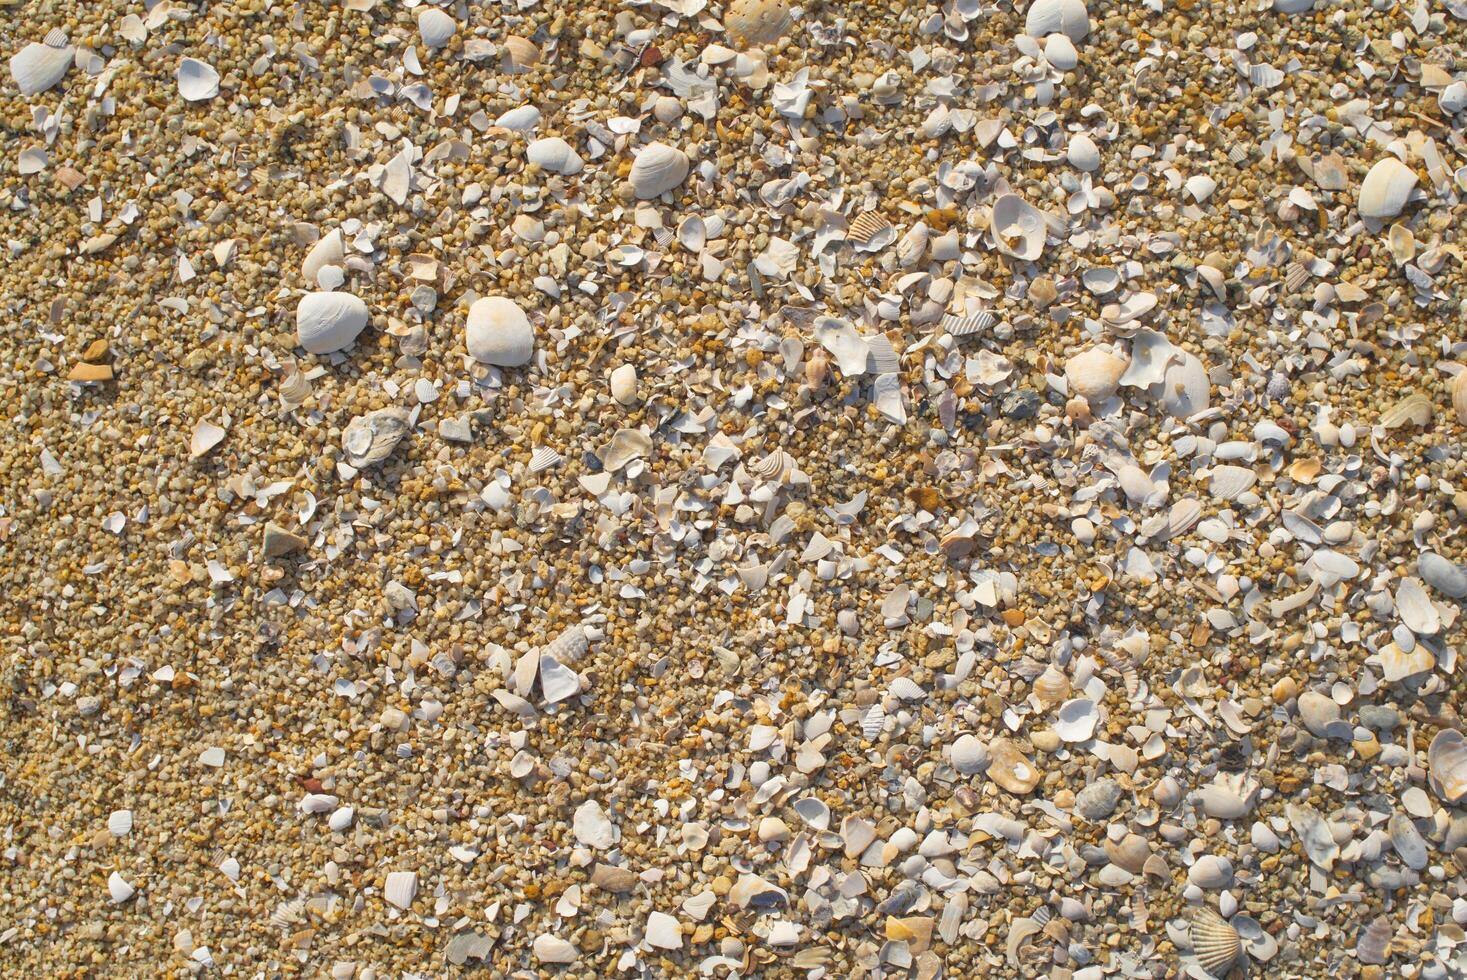 zee strand zand oppervlakte structuur foto